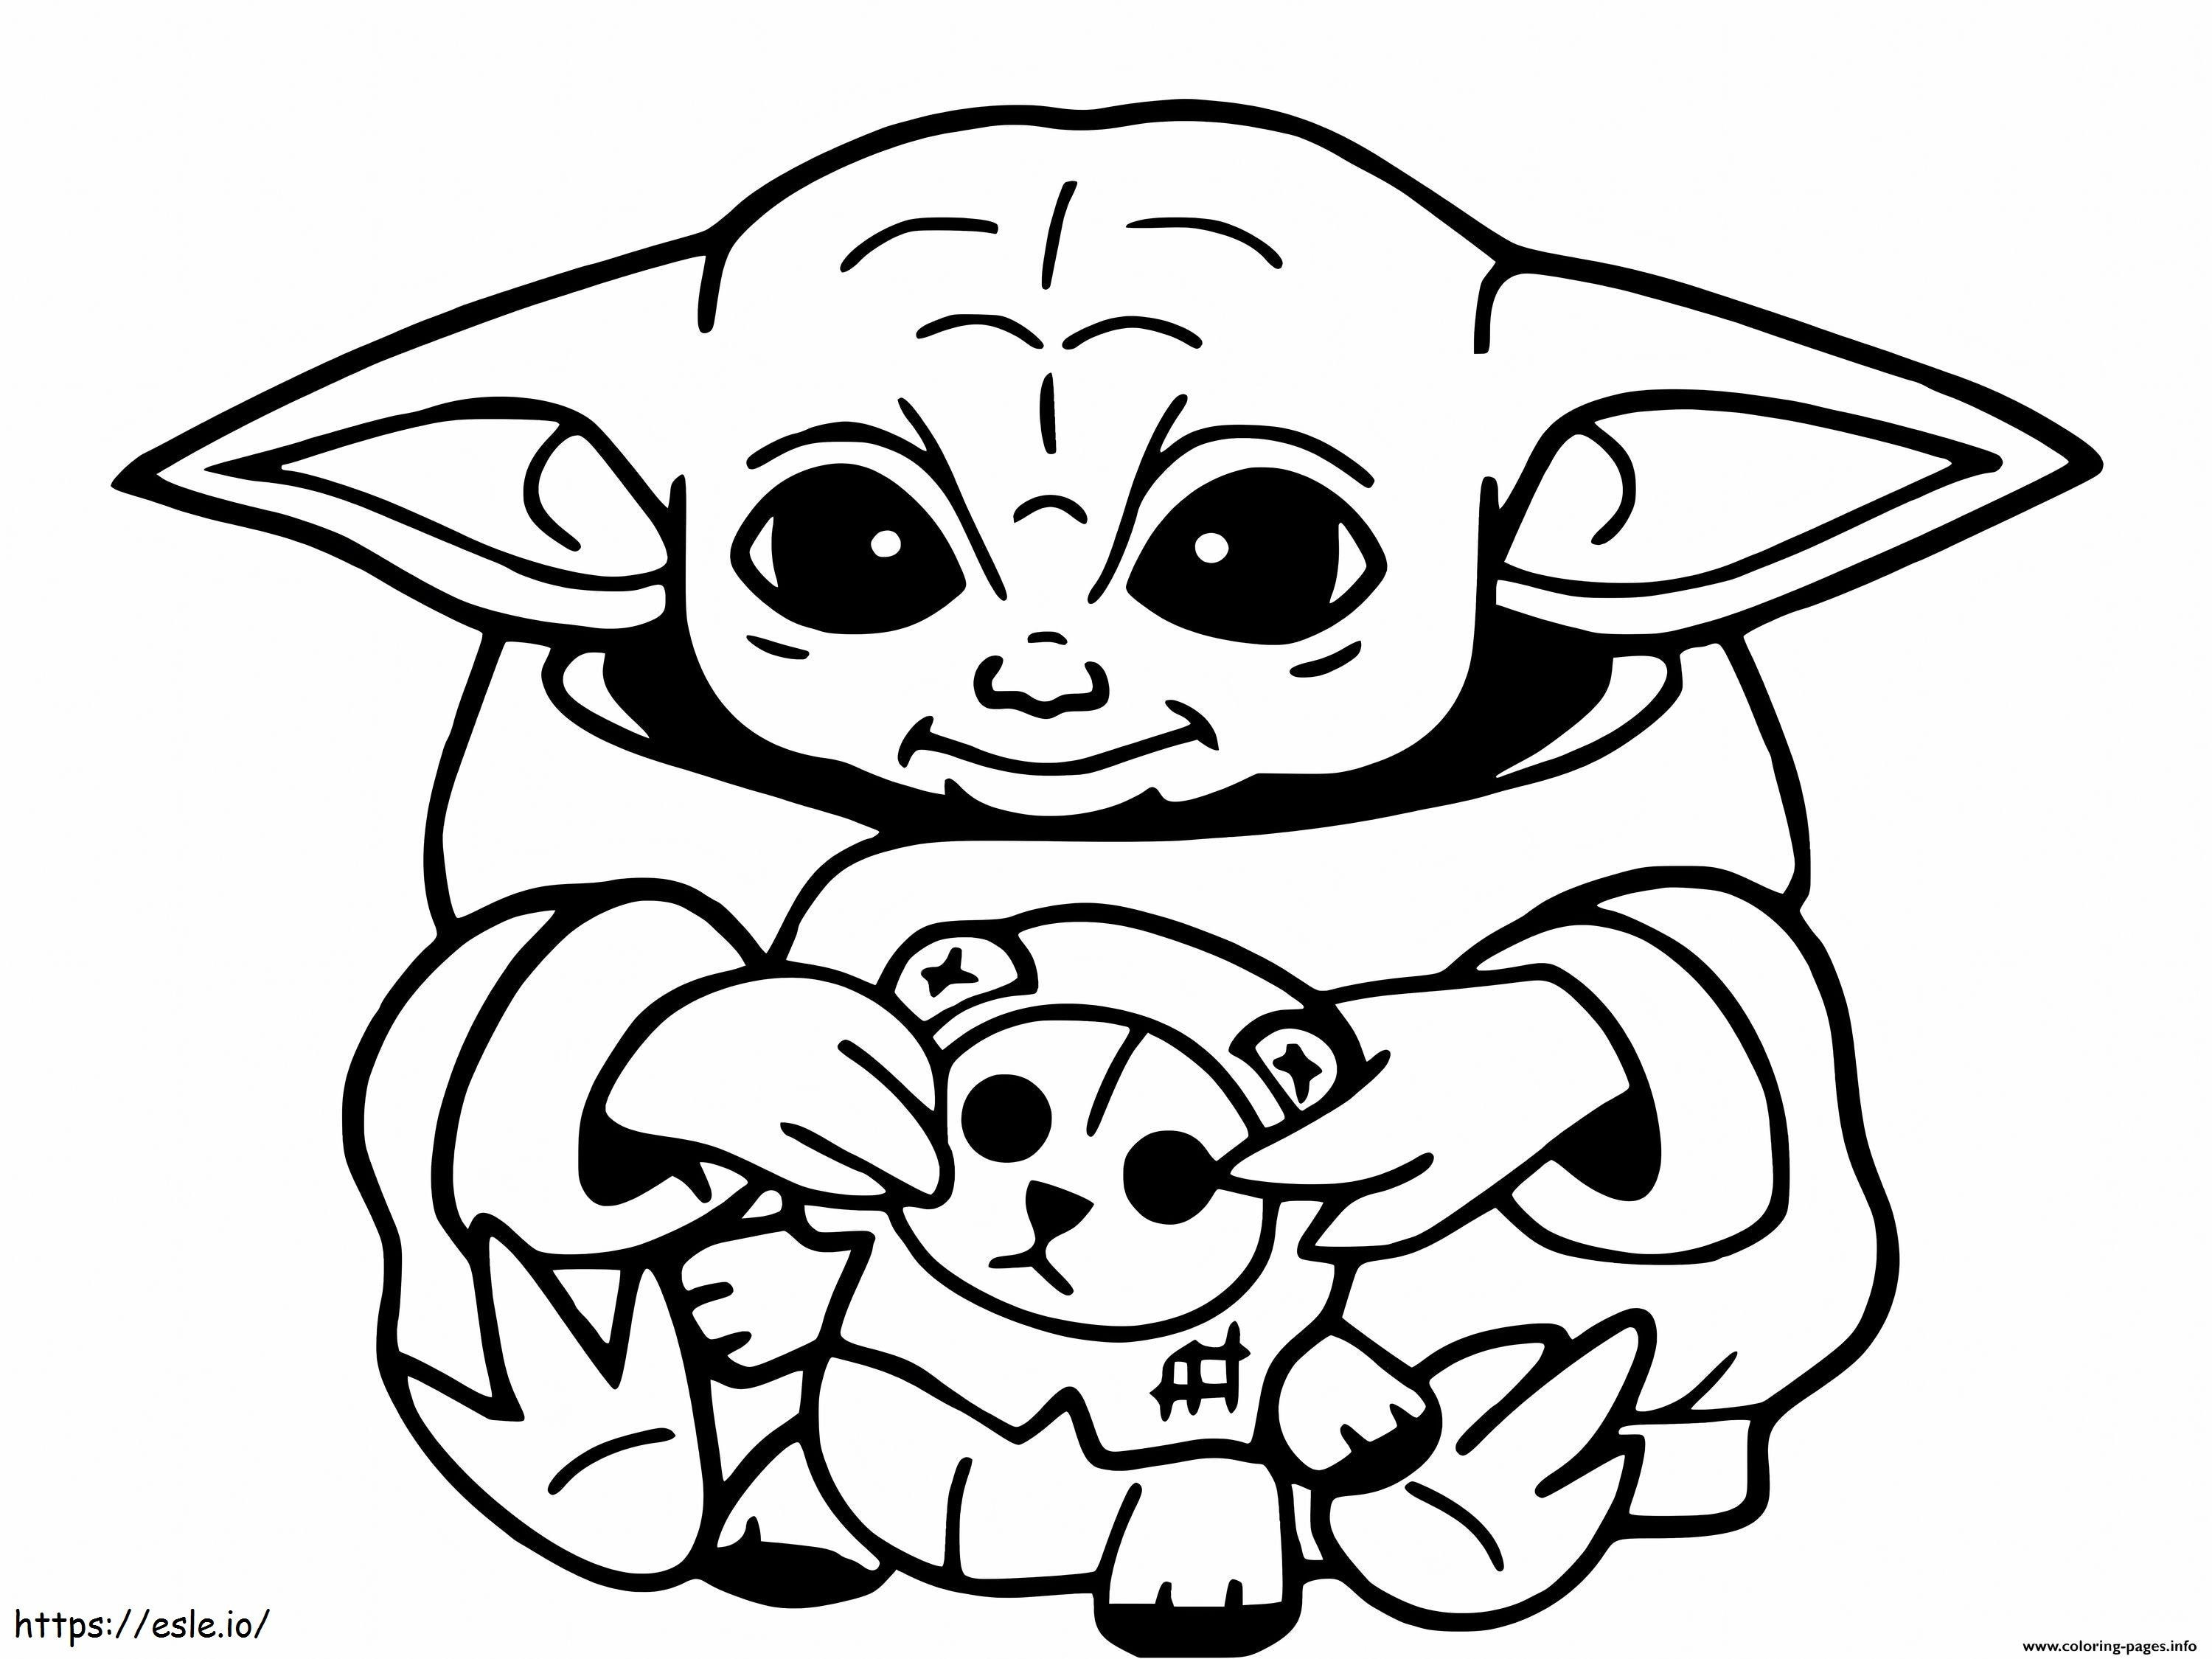 Coloriage Bébé Yoda et jouets à imprimer dessin